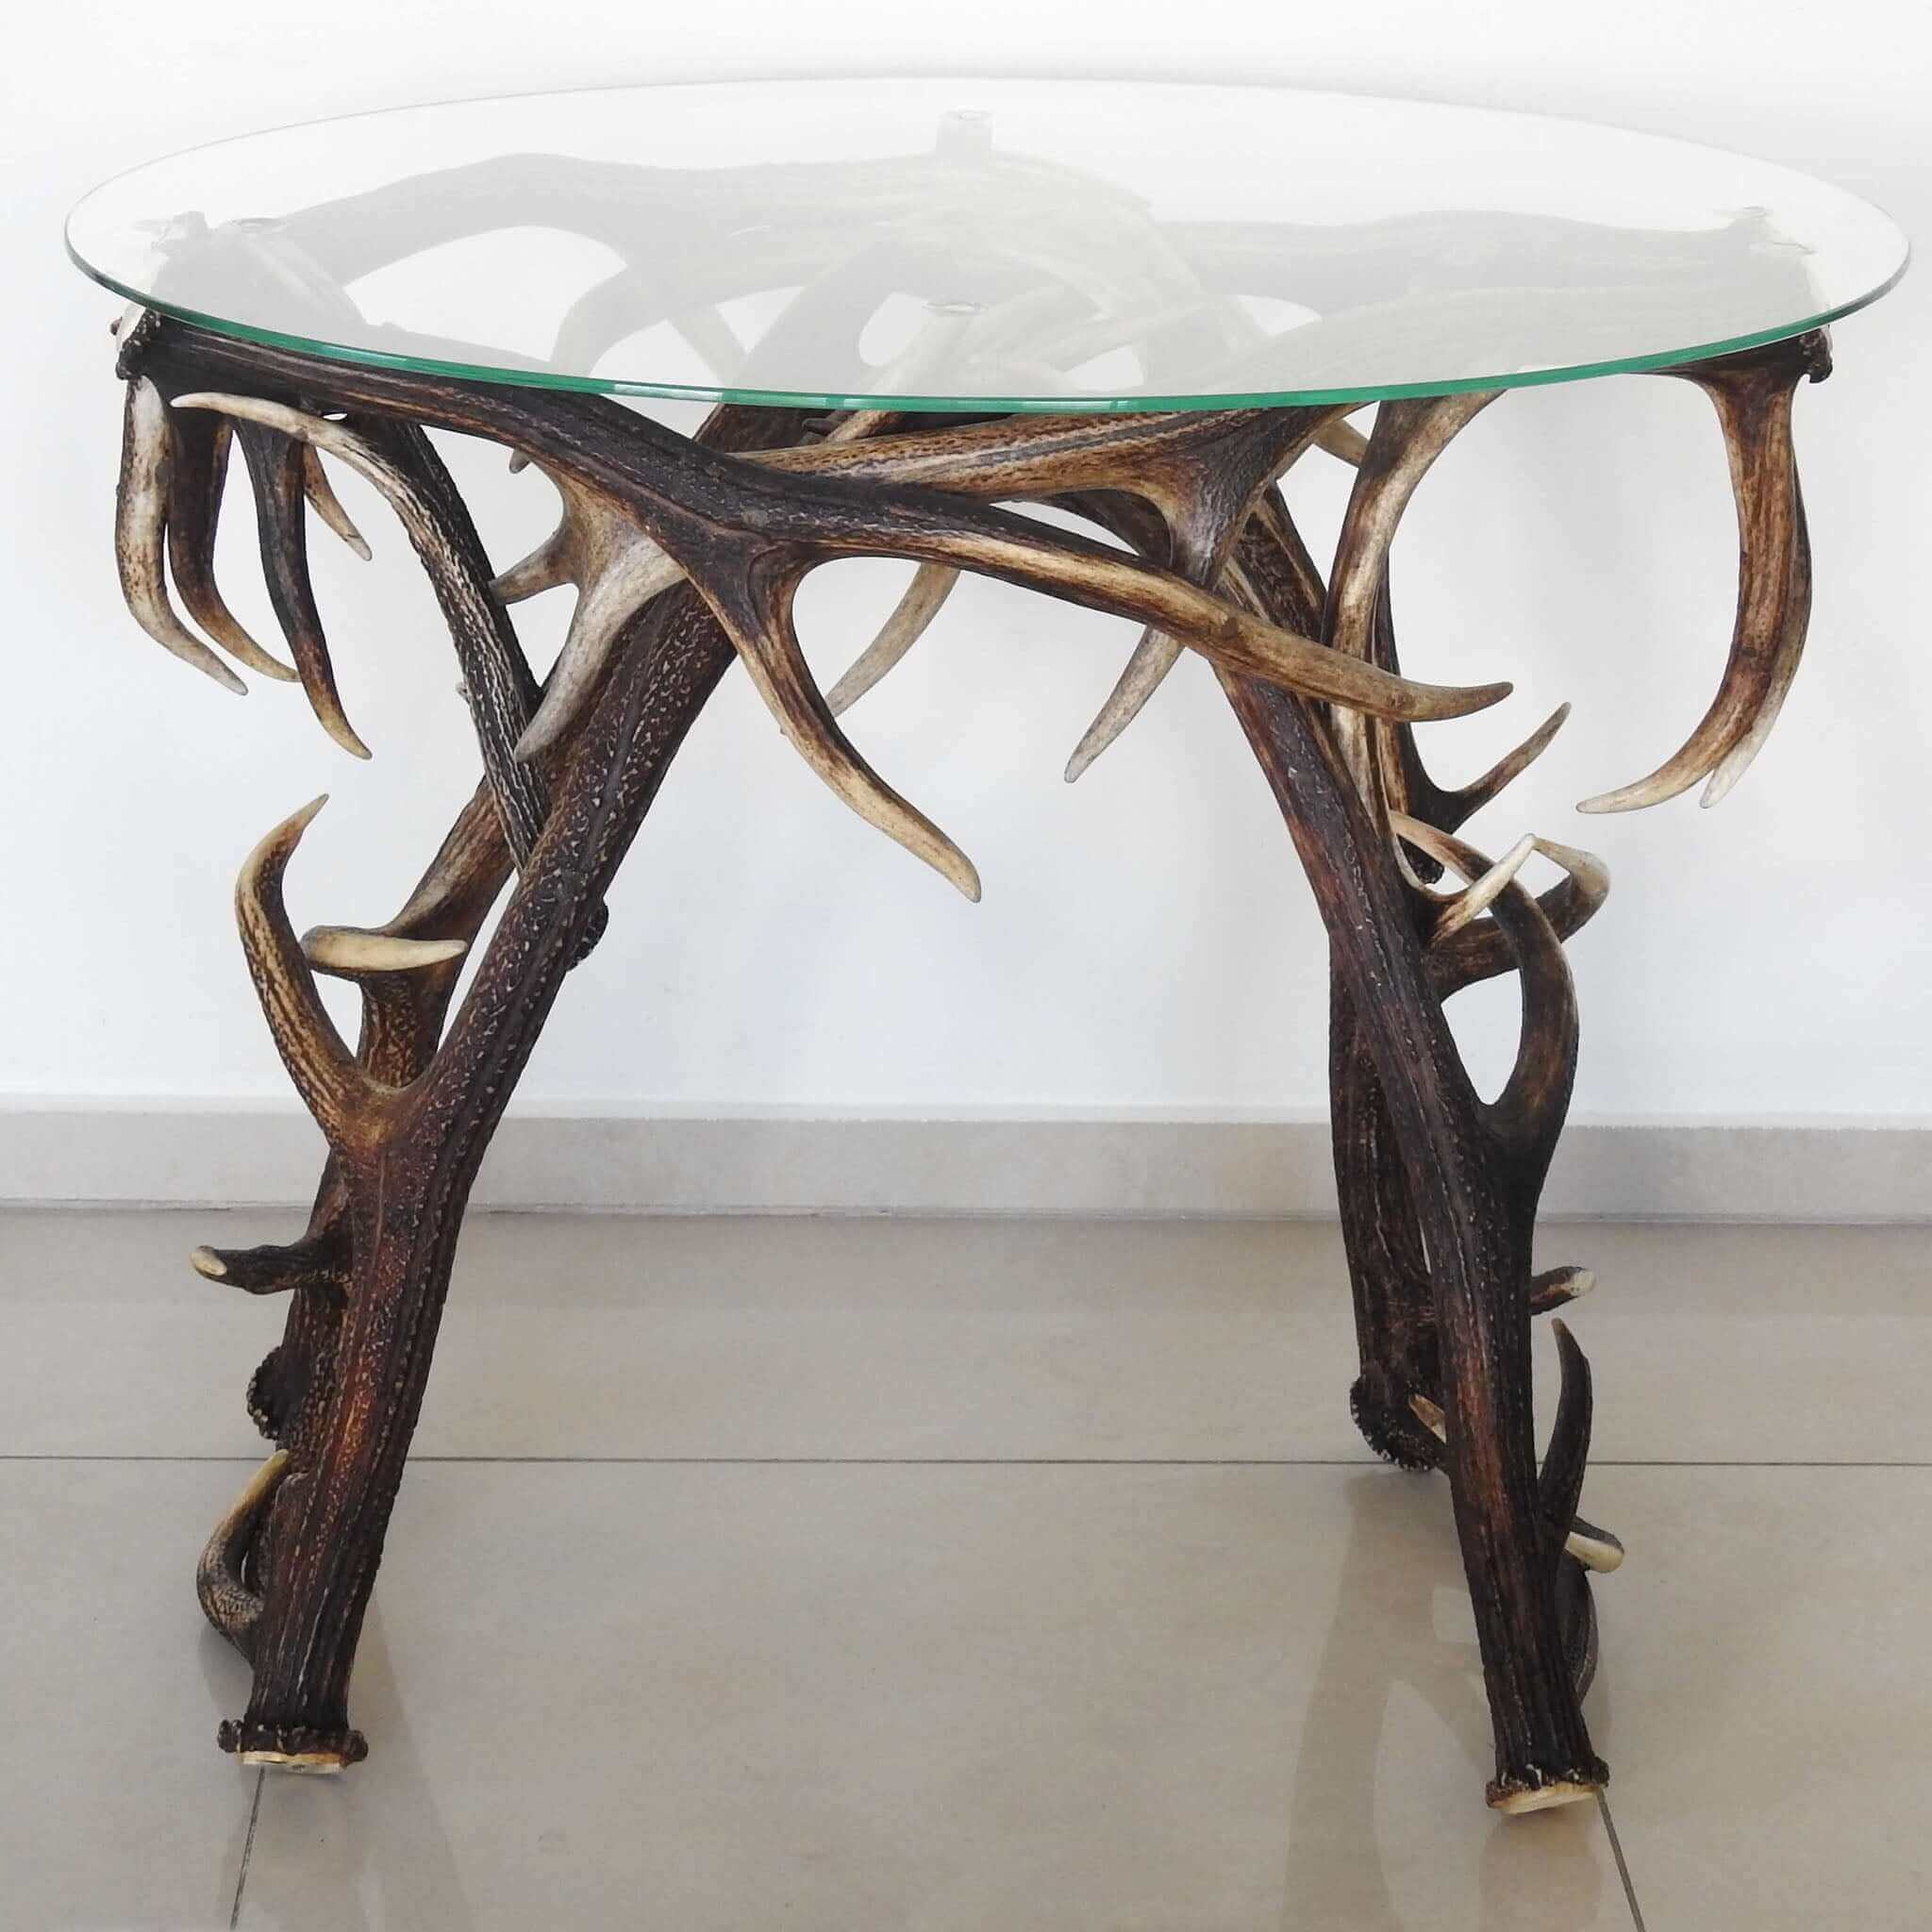 Real deer antler table.